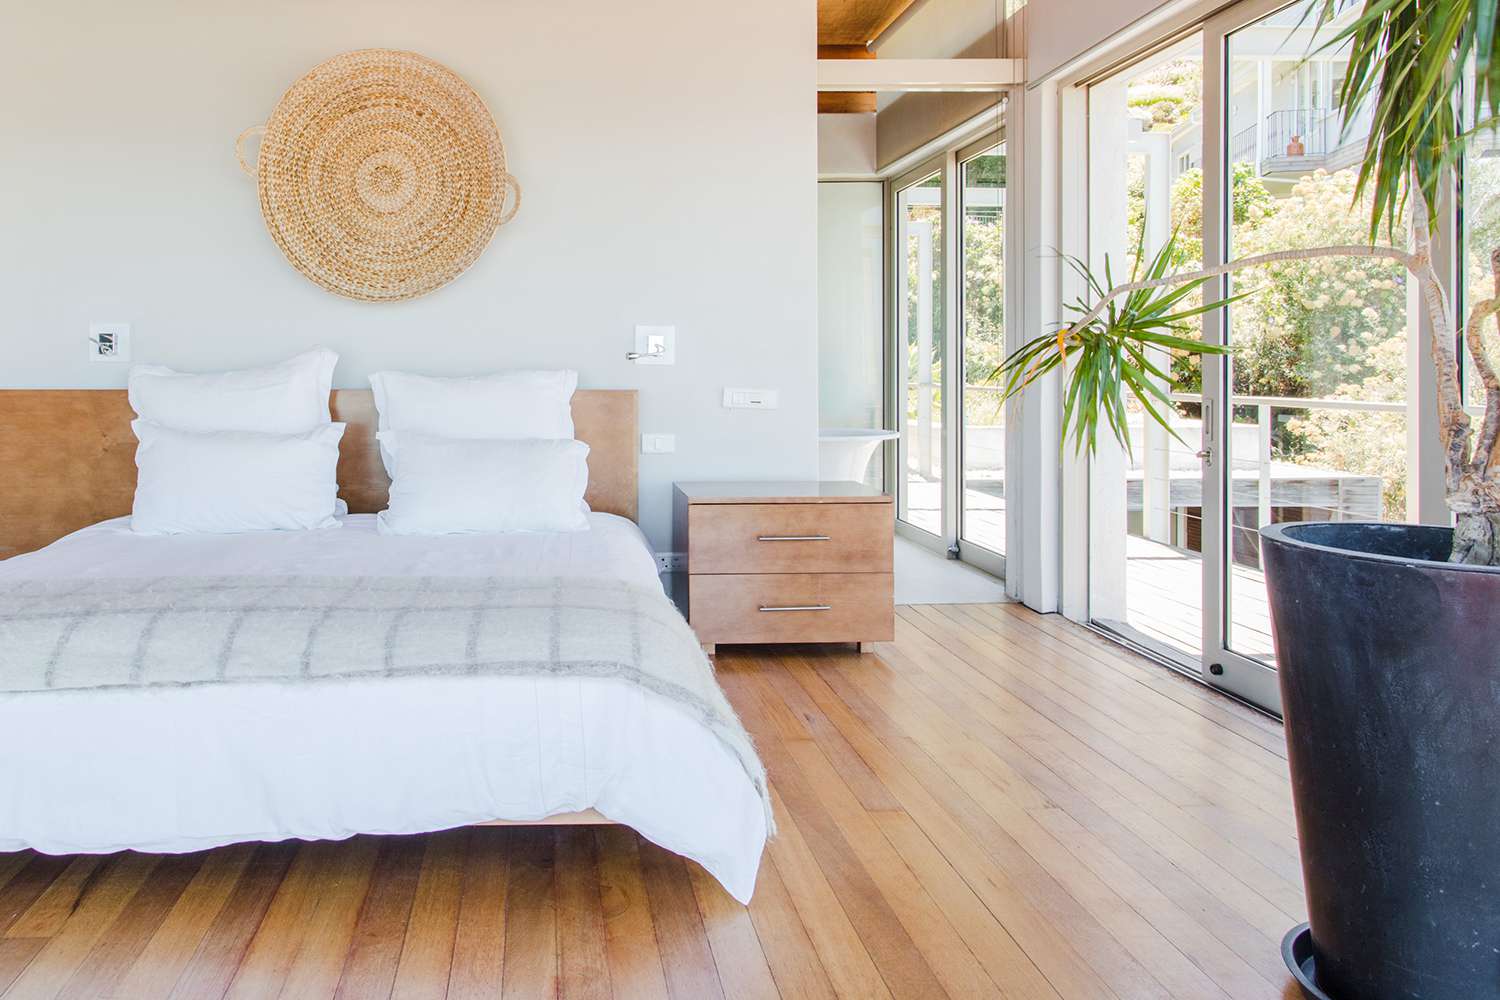 Chambre à coucher avec un lit king size, portes coulissantes en verre, plante palmier et suspension murale circulaire tissée